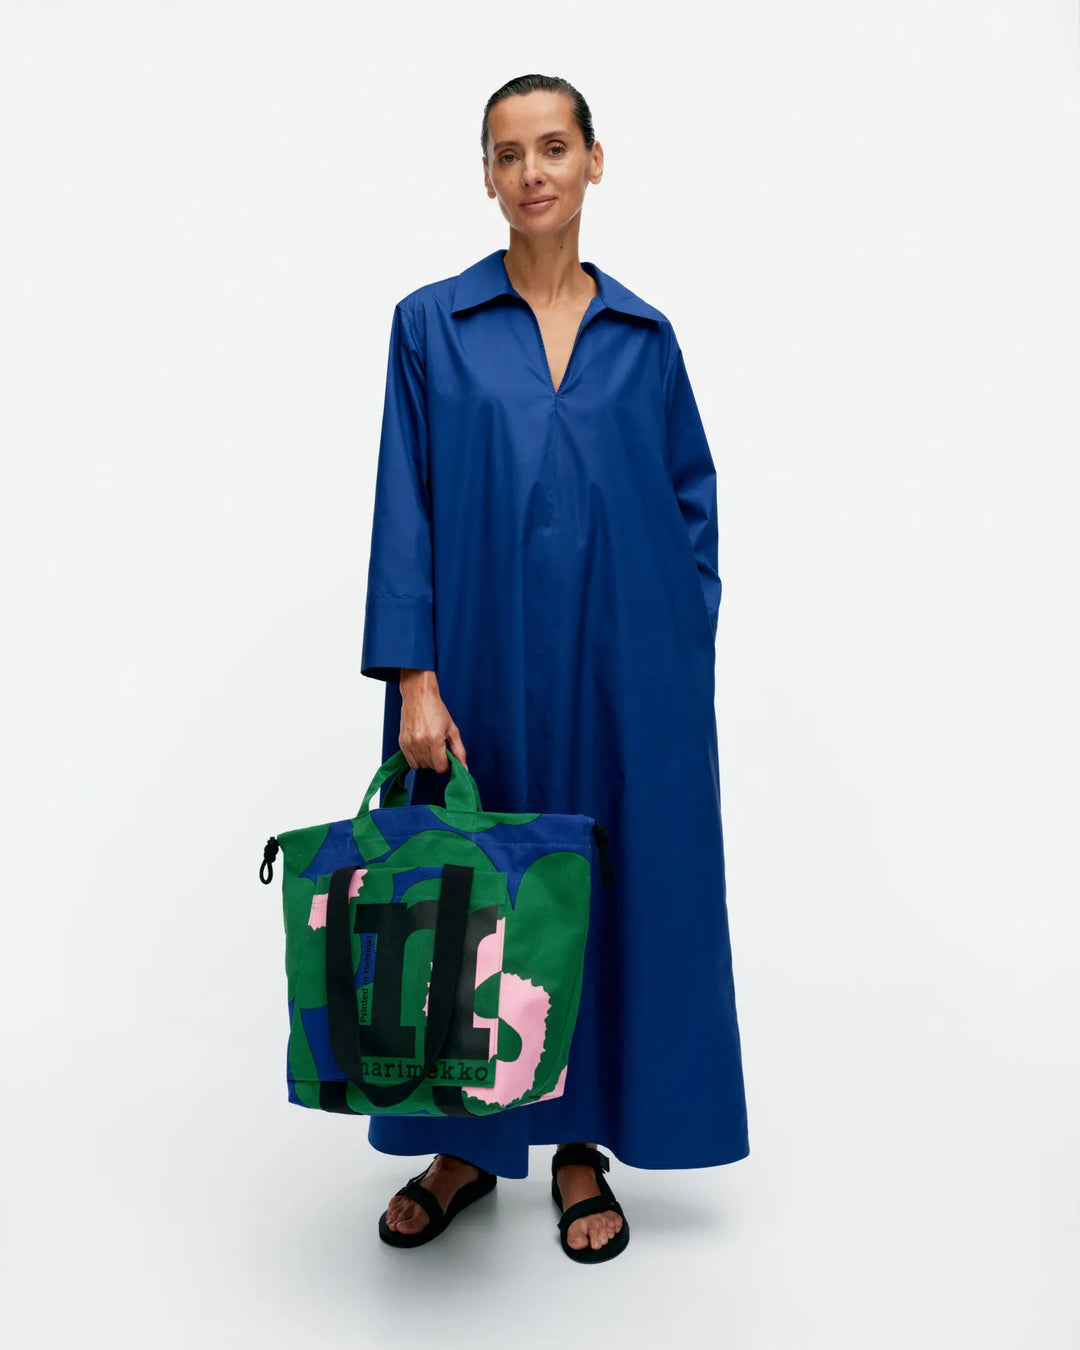 Unikko Tote Bag, Green/Blue/Pink